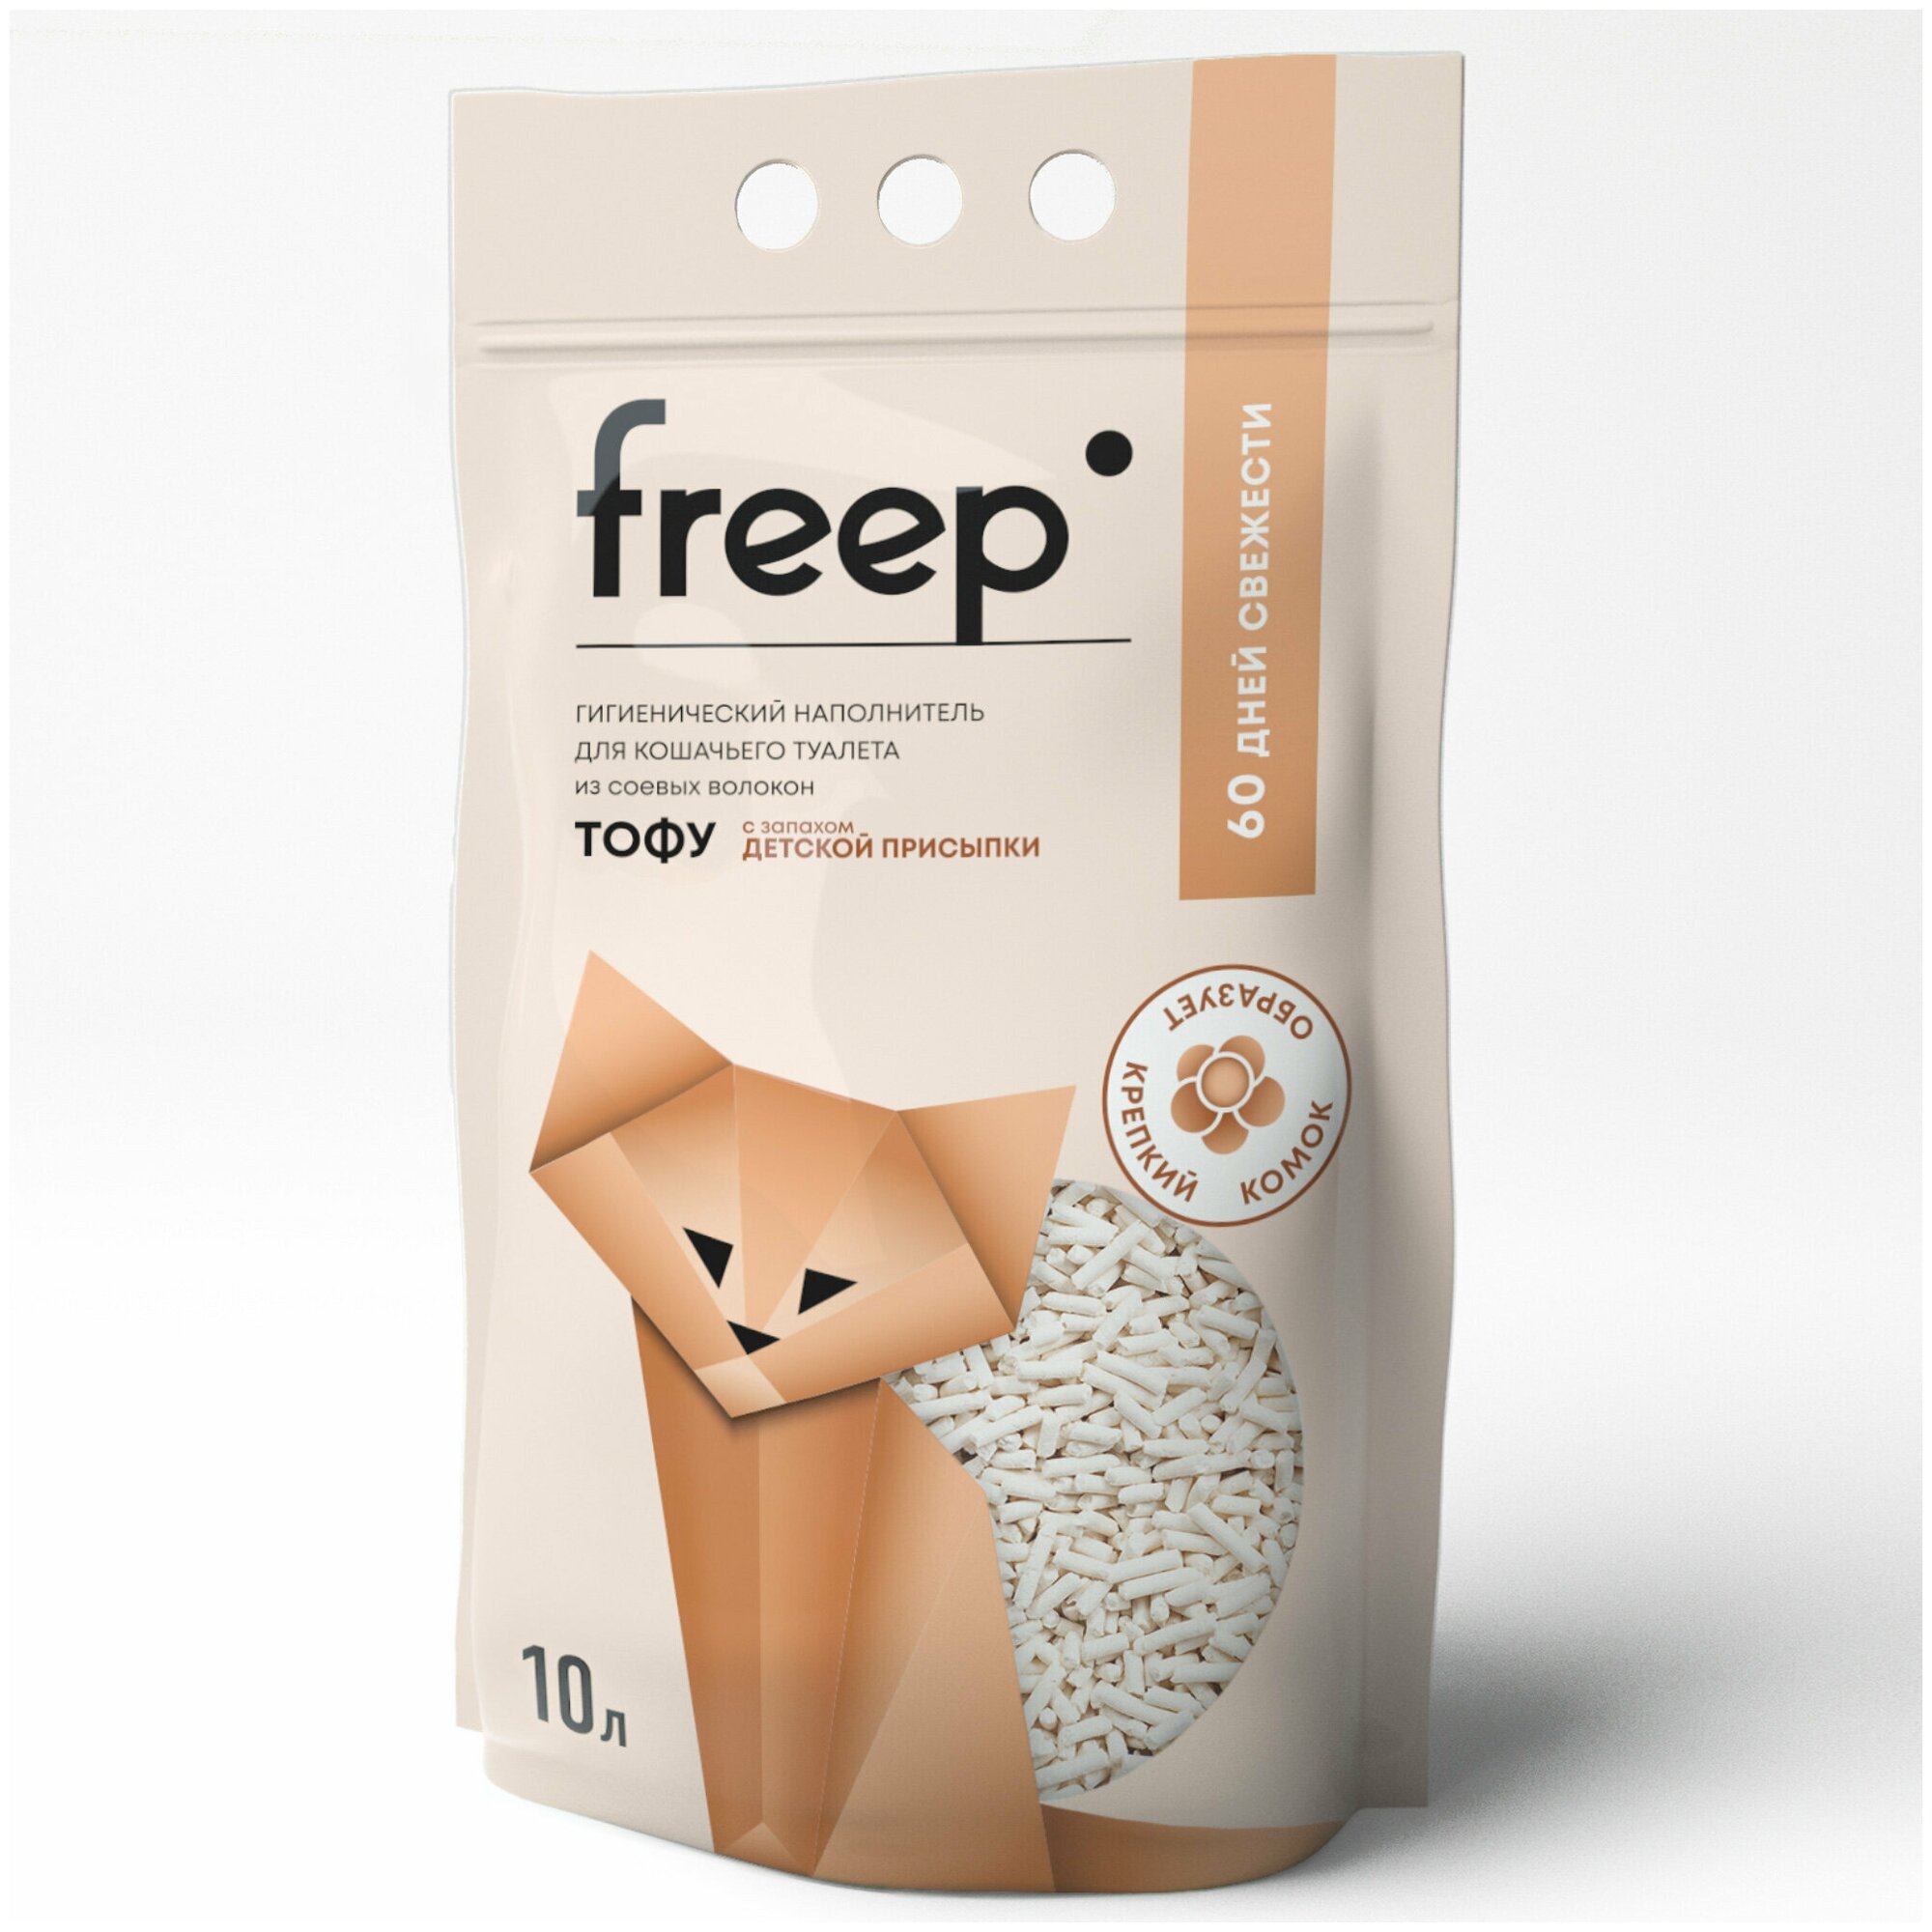 Freep Наполнитель для кошачьего туалета тофу 10 л Детская присыпка